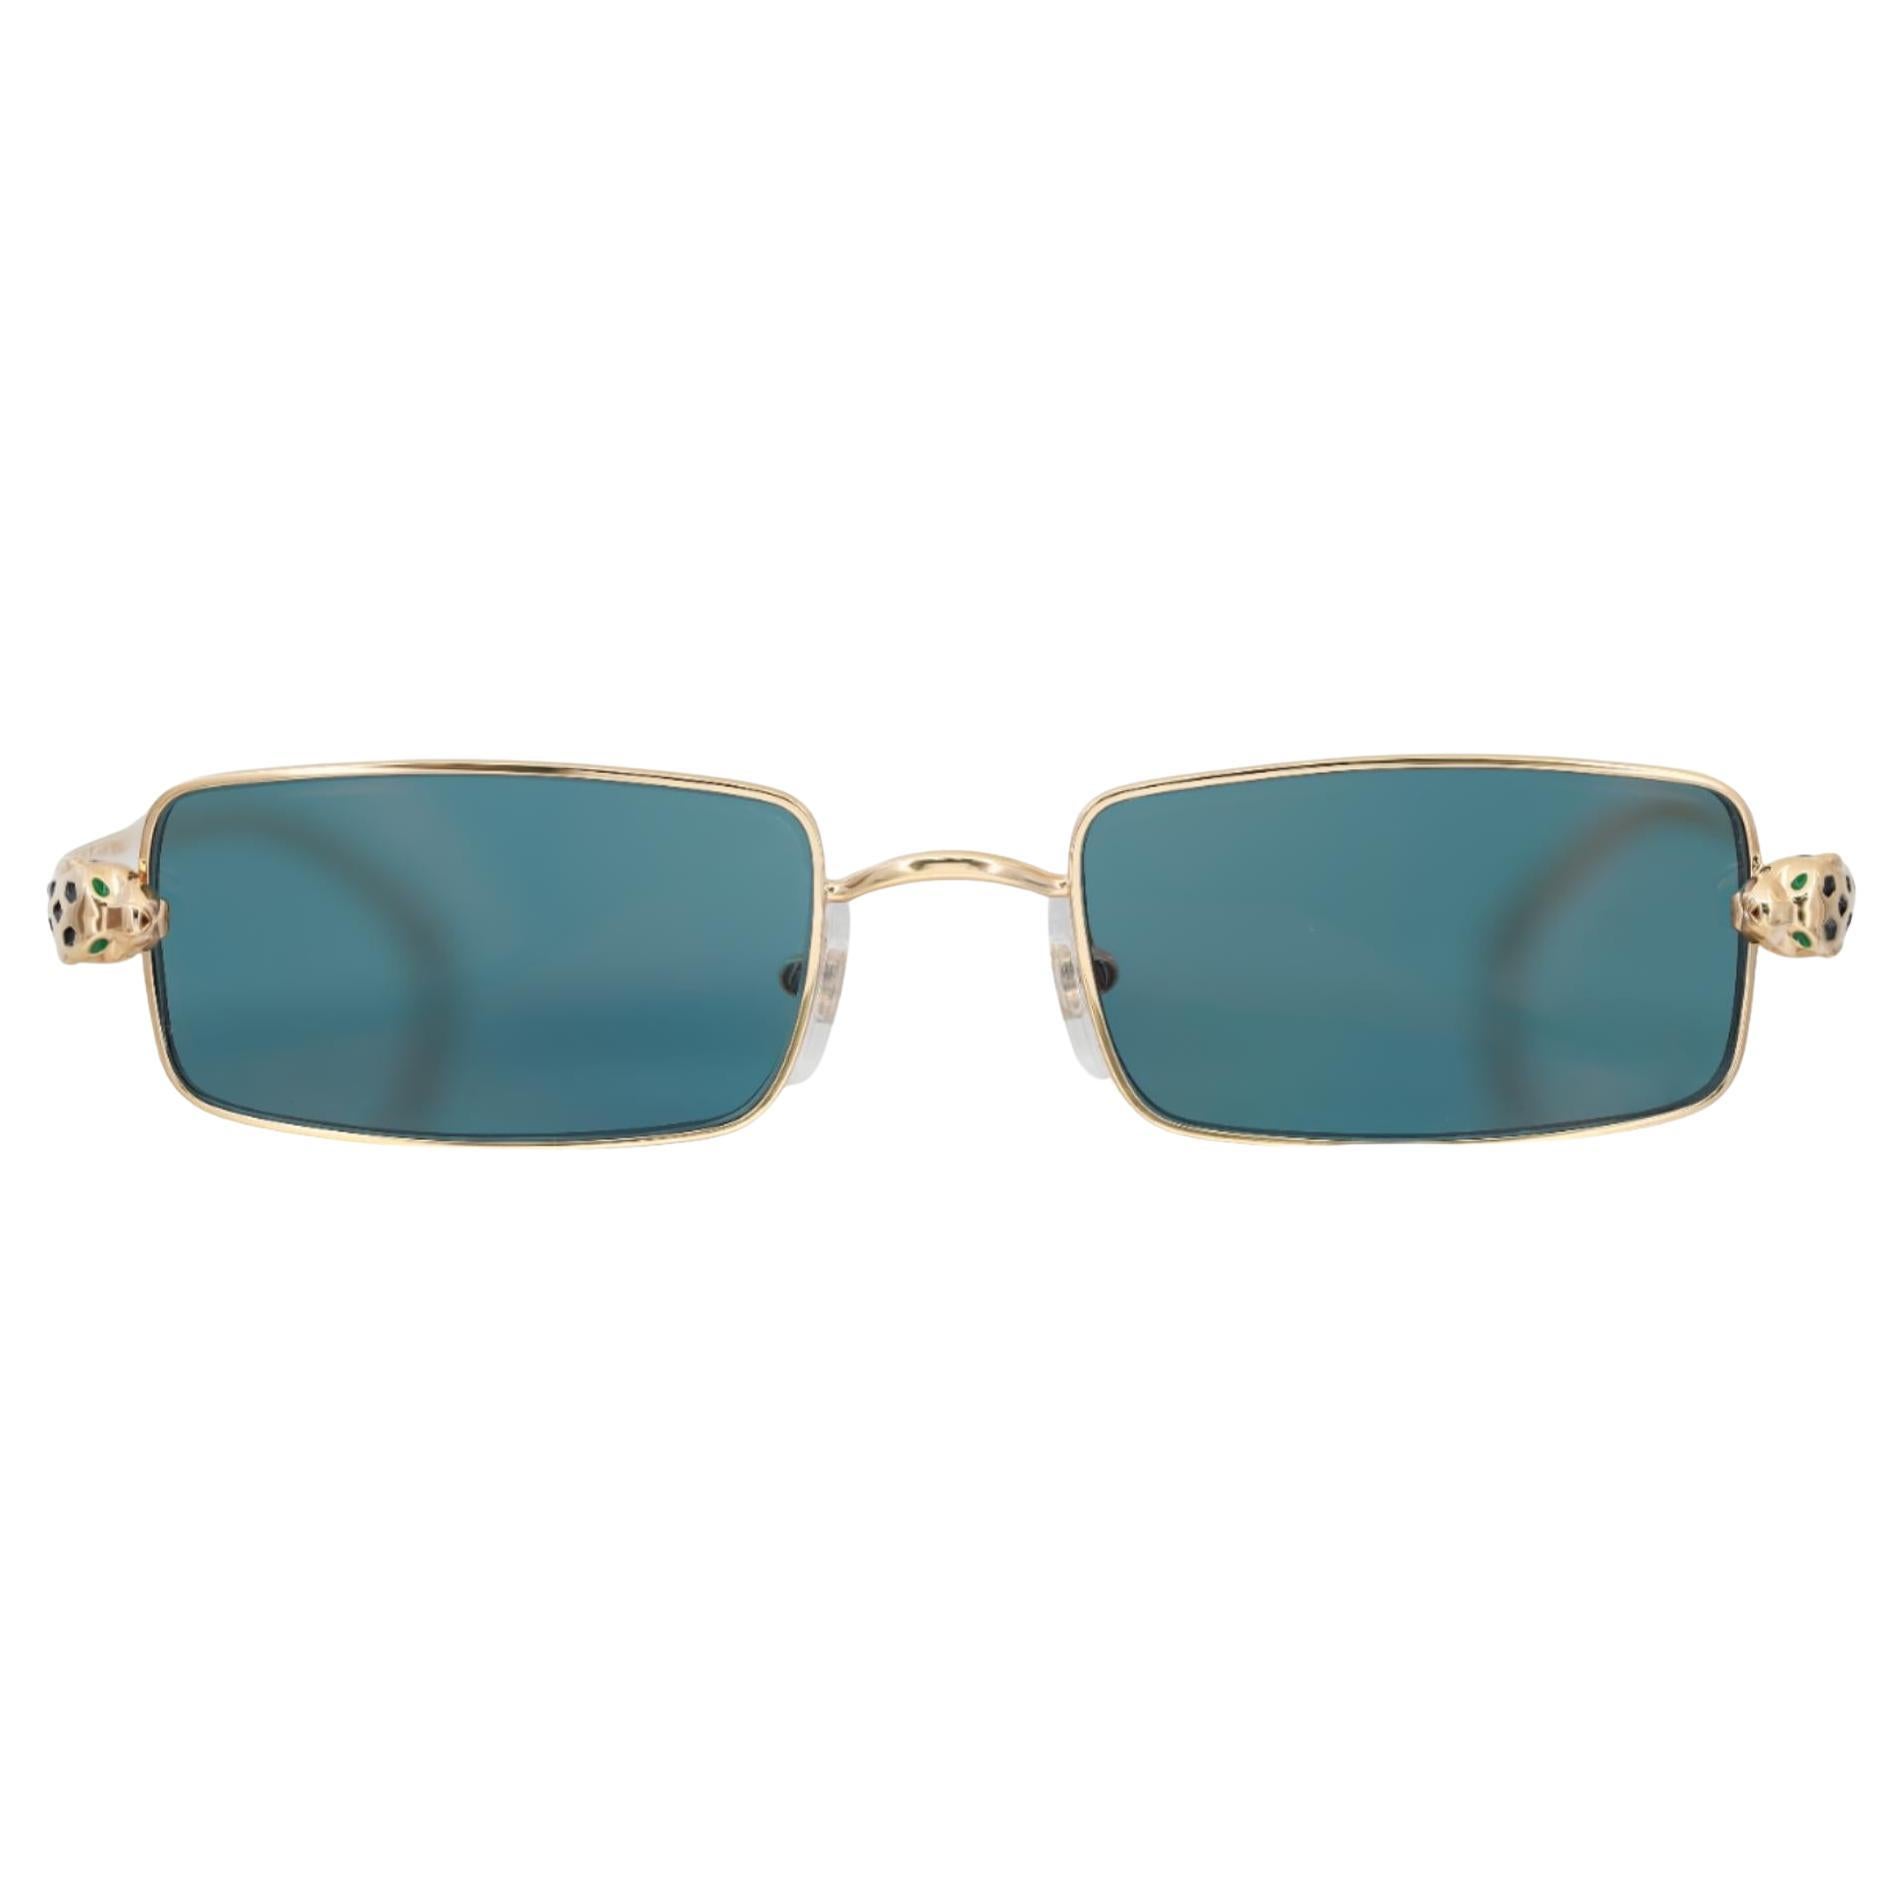 Cartier Panthere De Cartier Metal Golden Finish Rectangular Shape Sunglasses